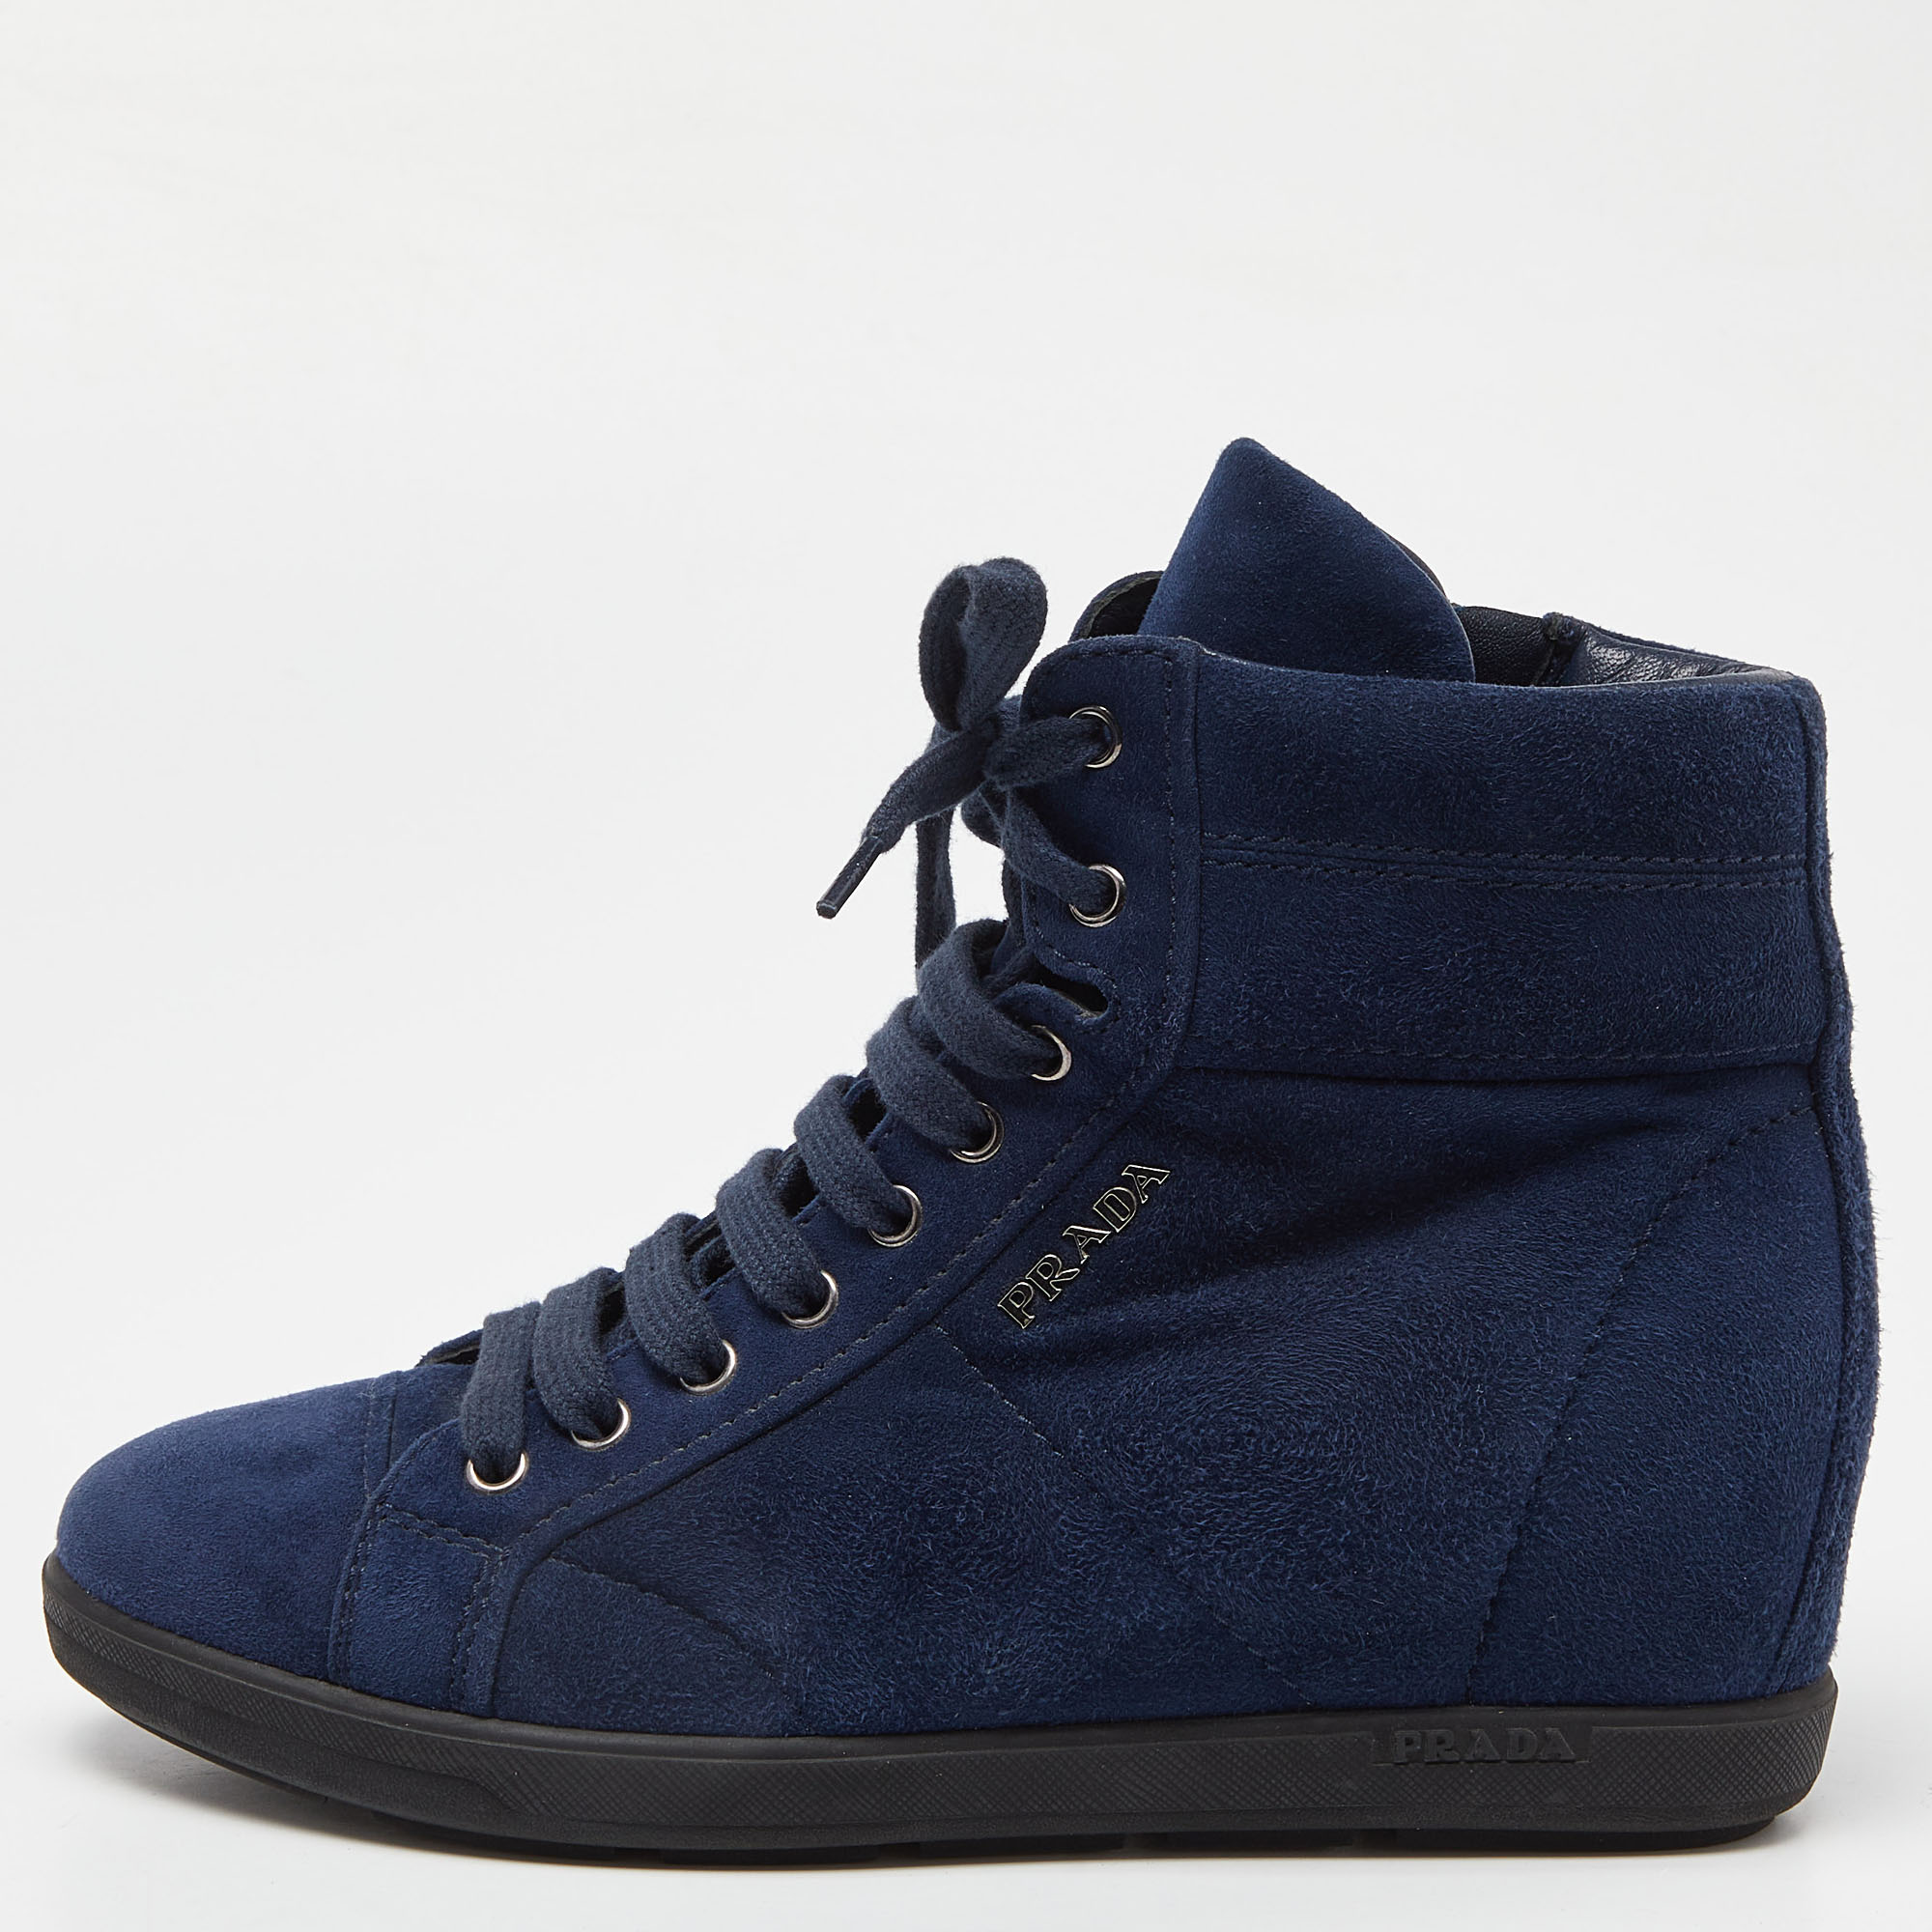 Prada sport blue suede wedge sneakers size 36